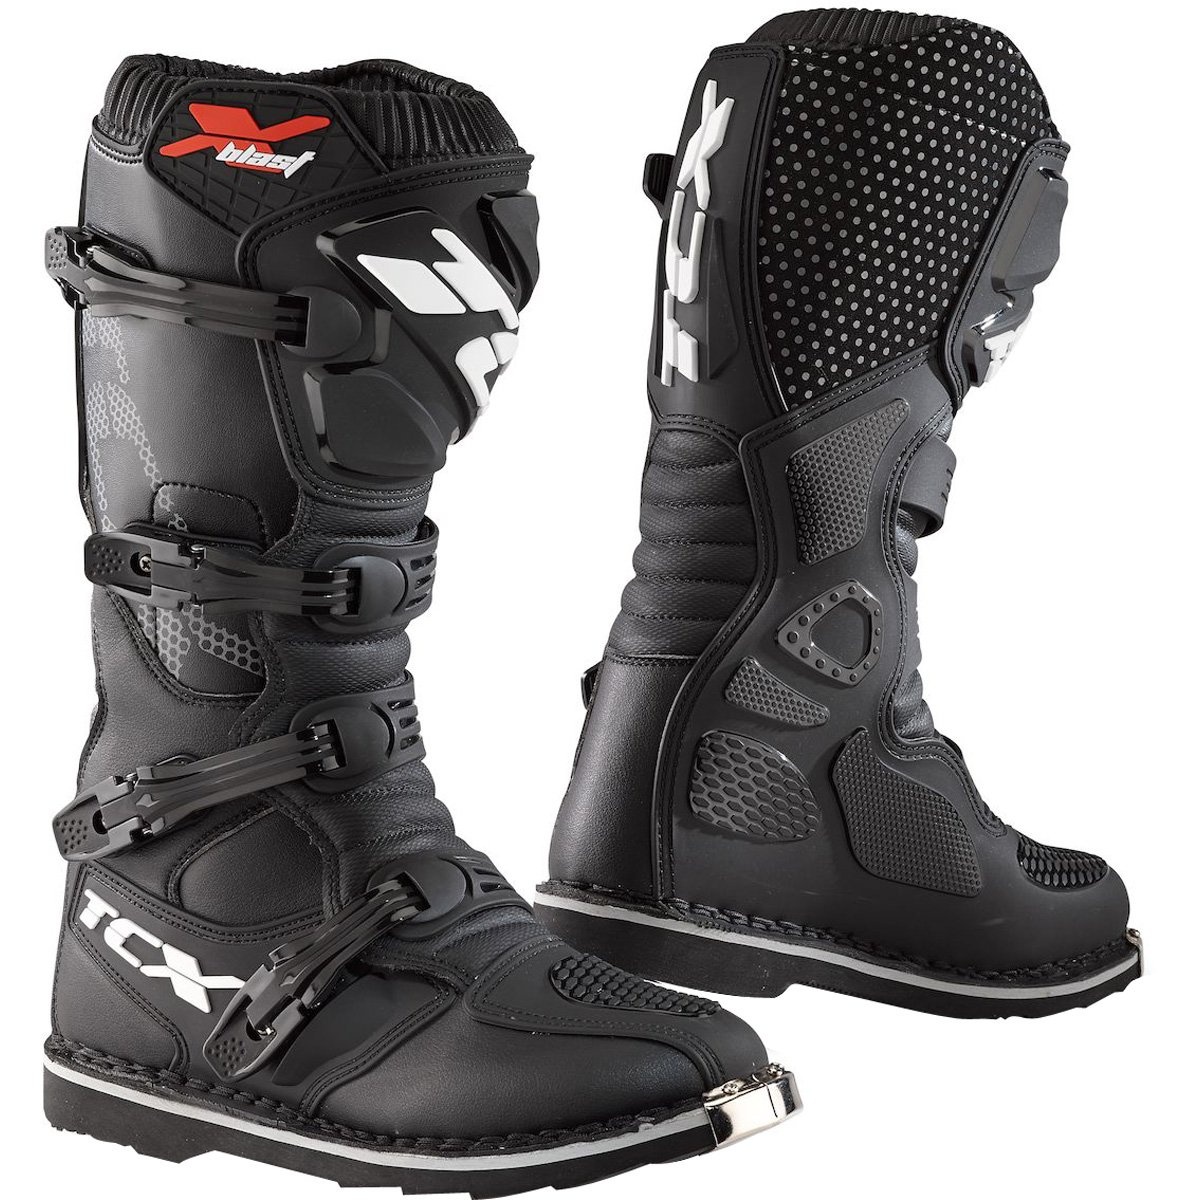 TCX - X-Blast, Herren-Motocross-Stiefel, Enduro-Stiefel, Off-Road-Stiefel mit Mikrofaser-Obermaterial und Goodyear-Laufsohle, Schwarz